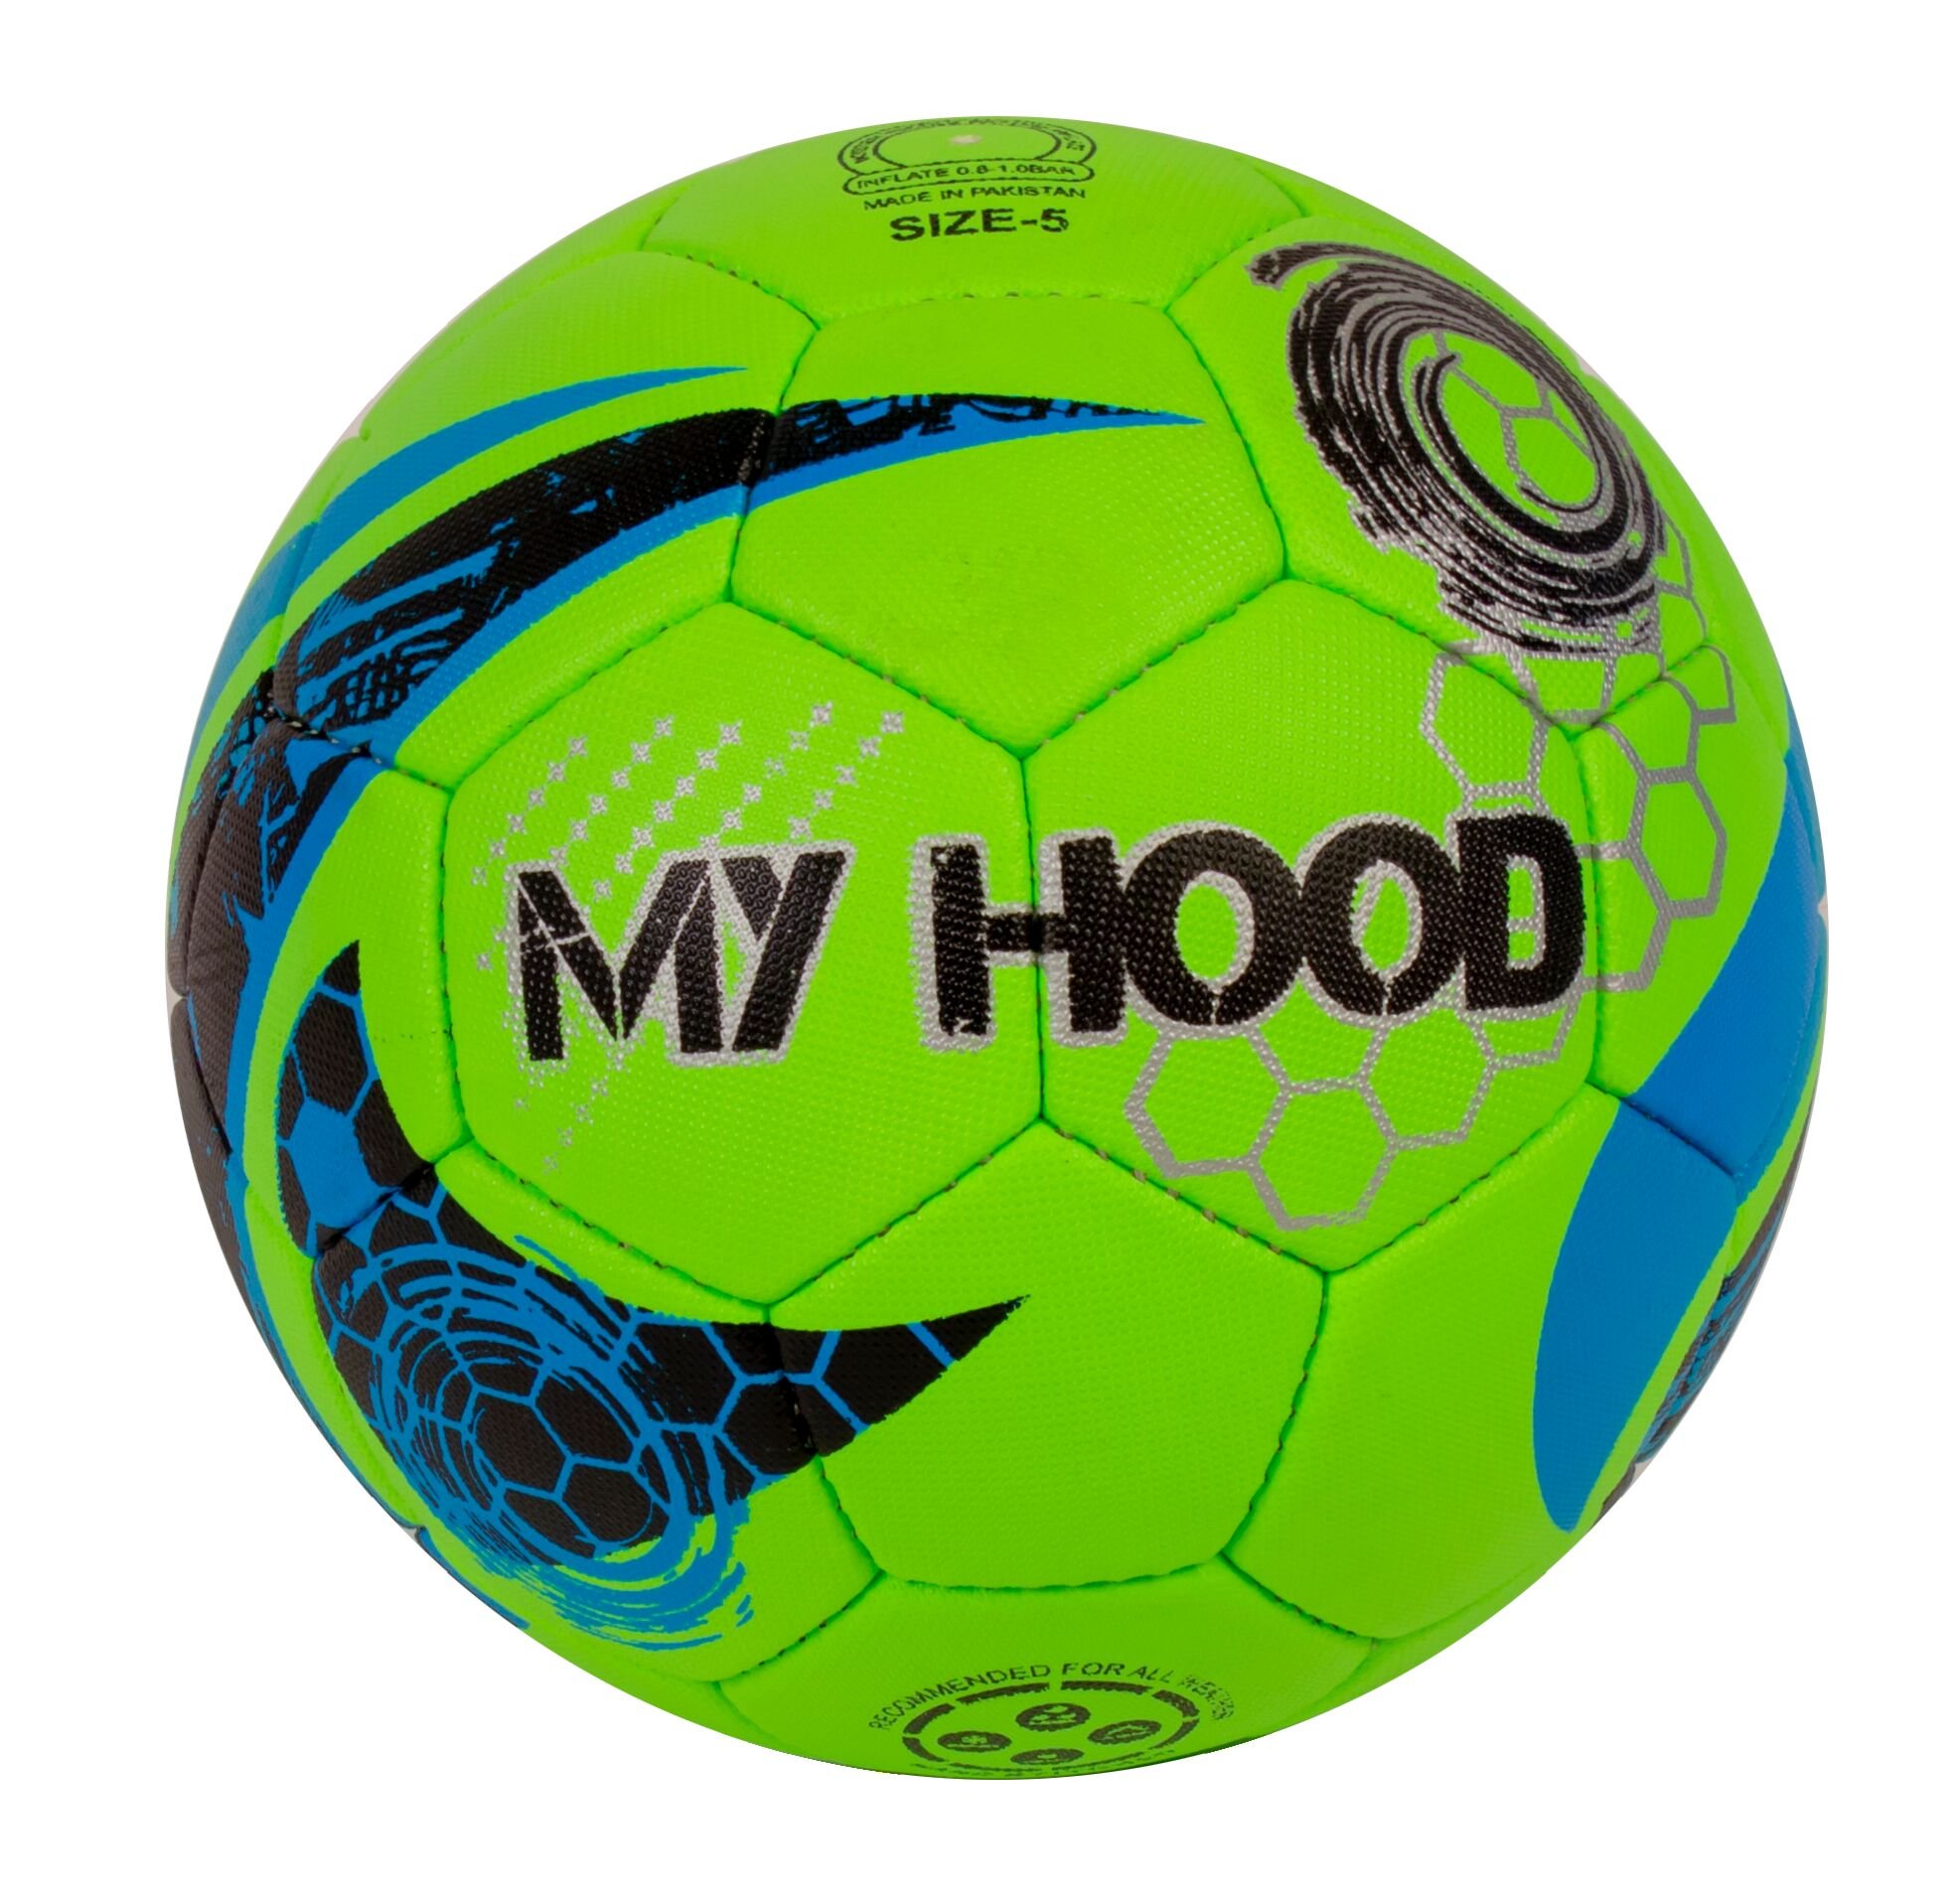 My Hood - Street Football - Green (302020)